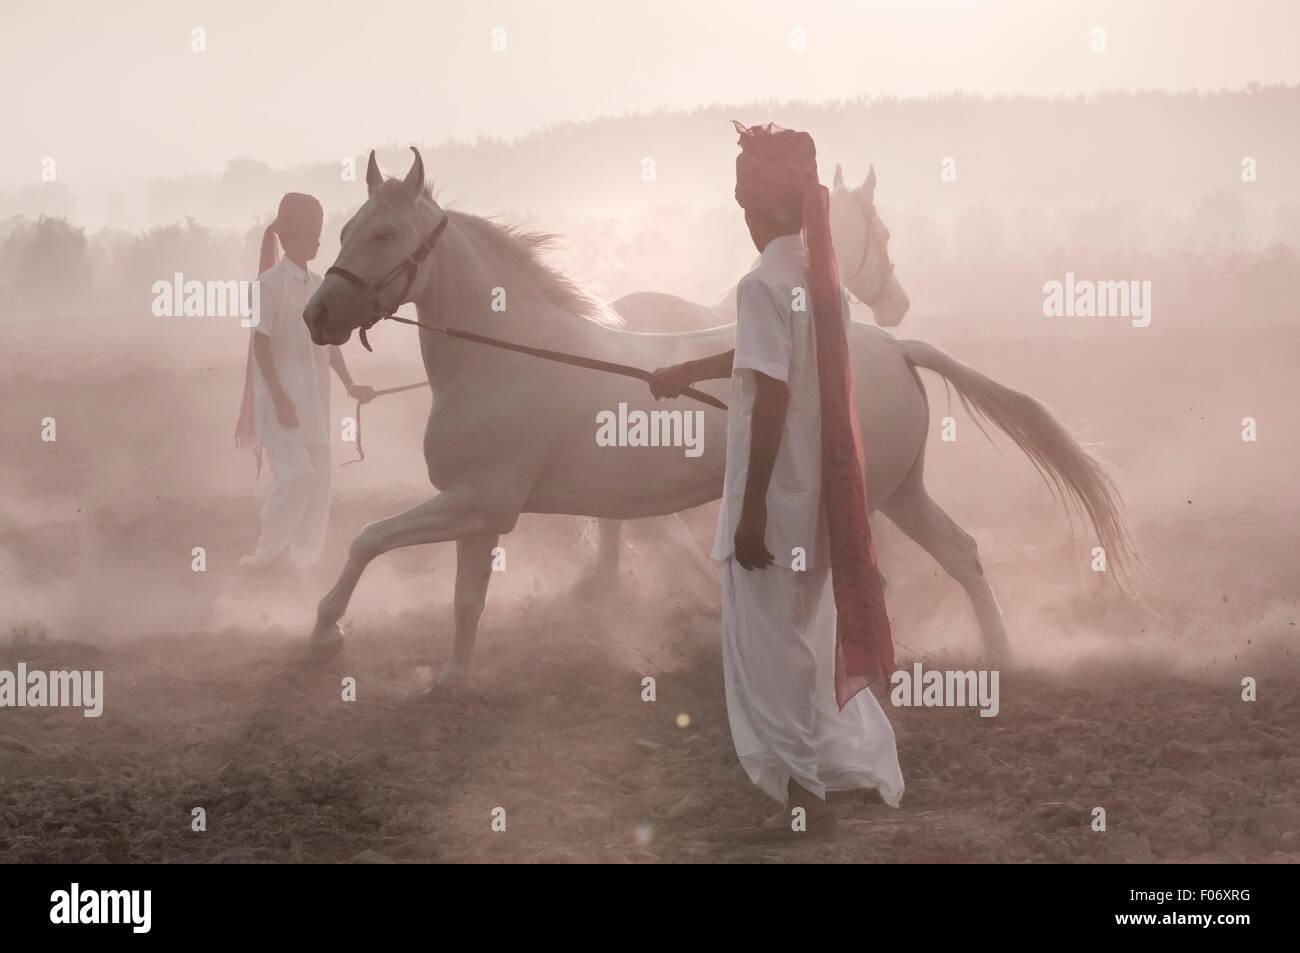 Deux cavaliers indiens leur formation à l'aube des chevaux Marwari blanc Banque D'Images